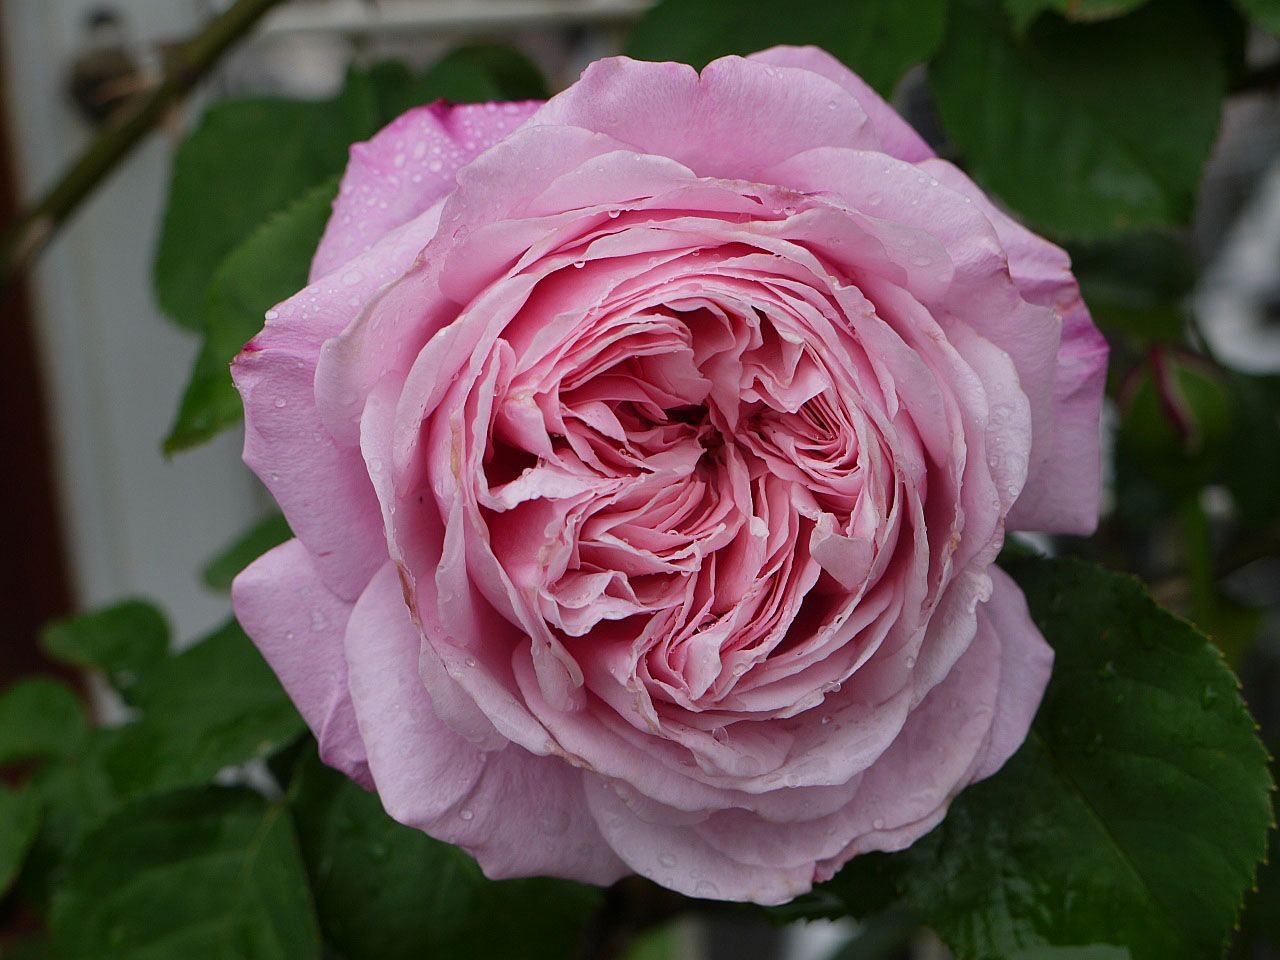 バラの初開花5品種 50 54番目 花弁数が多いミサト みさき バラの美と香りを求めて 楽天ブログ